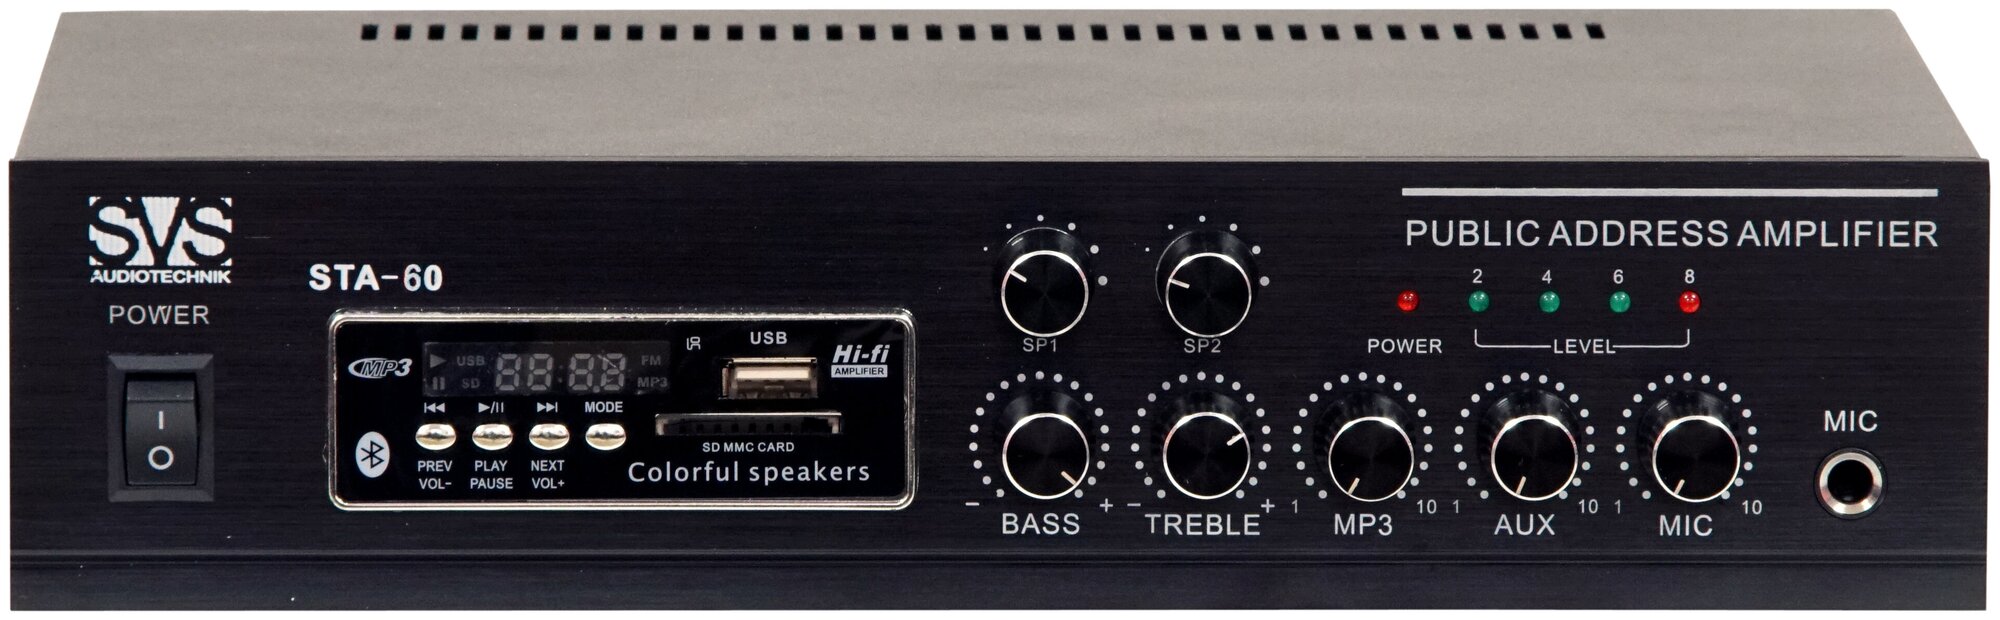 Трансляционный микшер-усилитель SVS Audiotechnik STA-60 мощность 60 Вт Блюуз FM радио 2 зоны MP3 плеер режим 100В